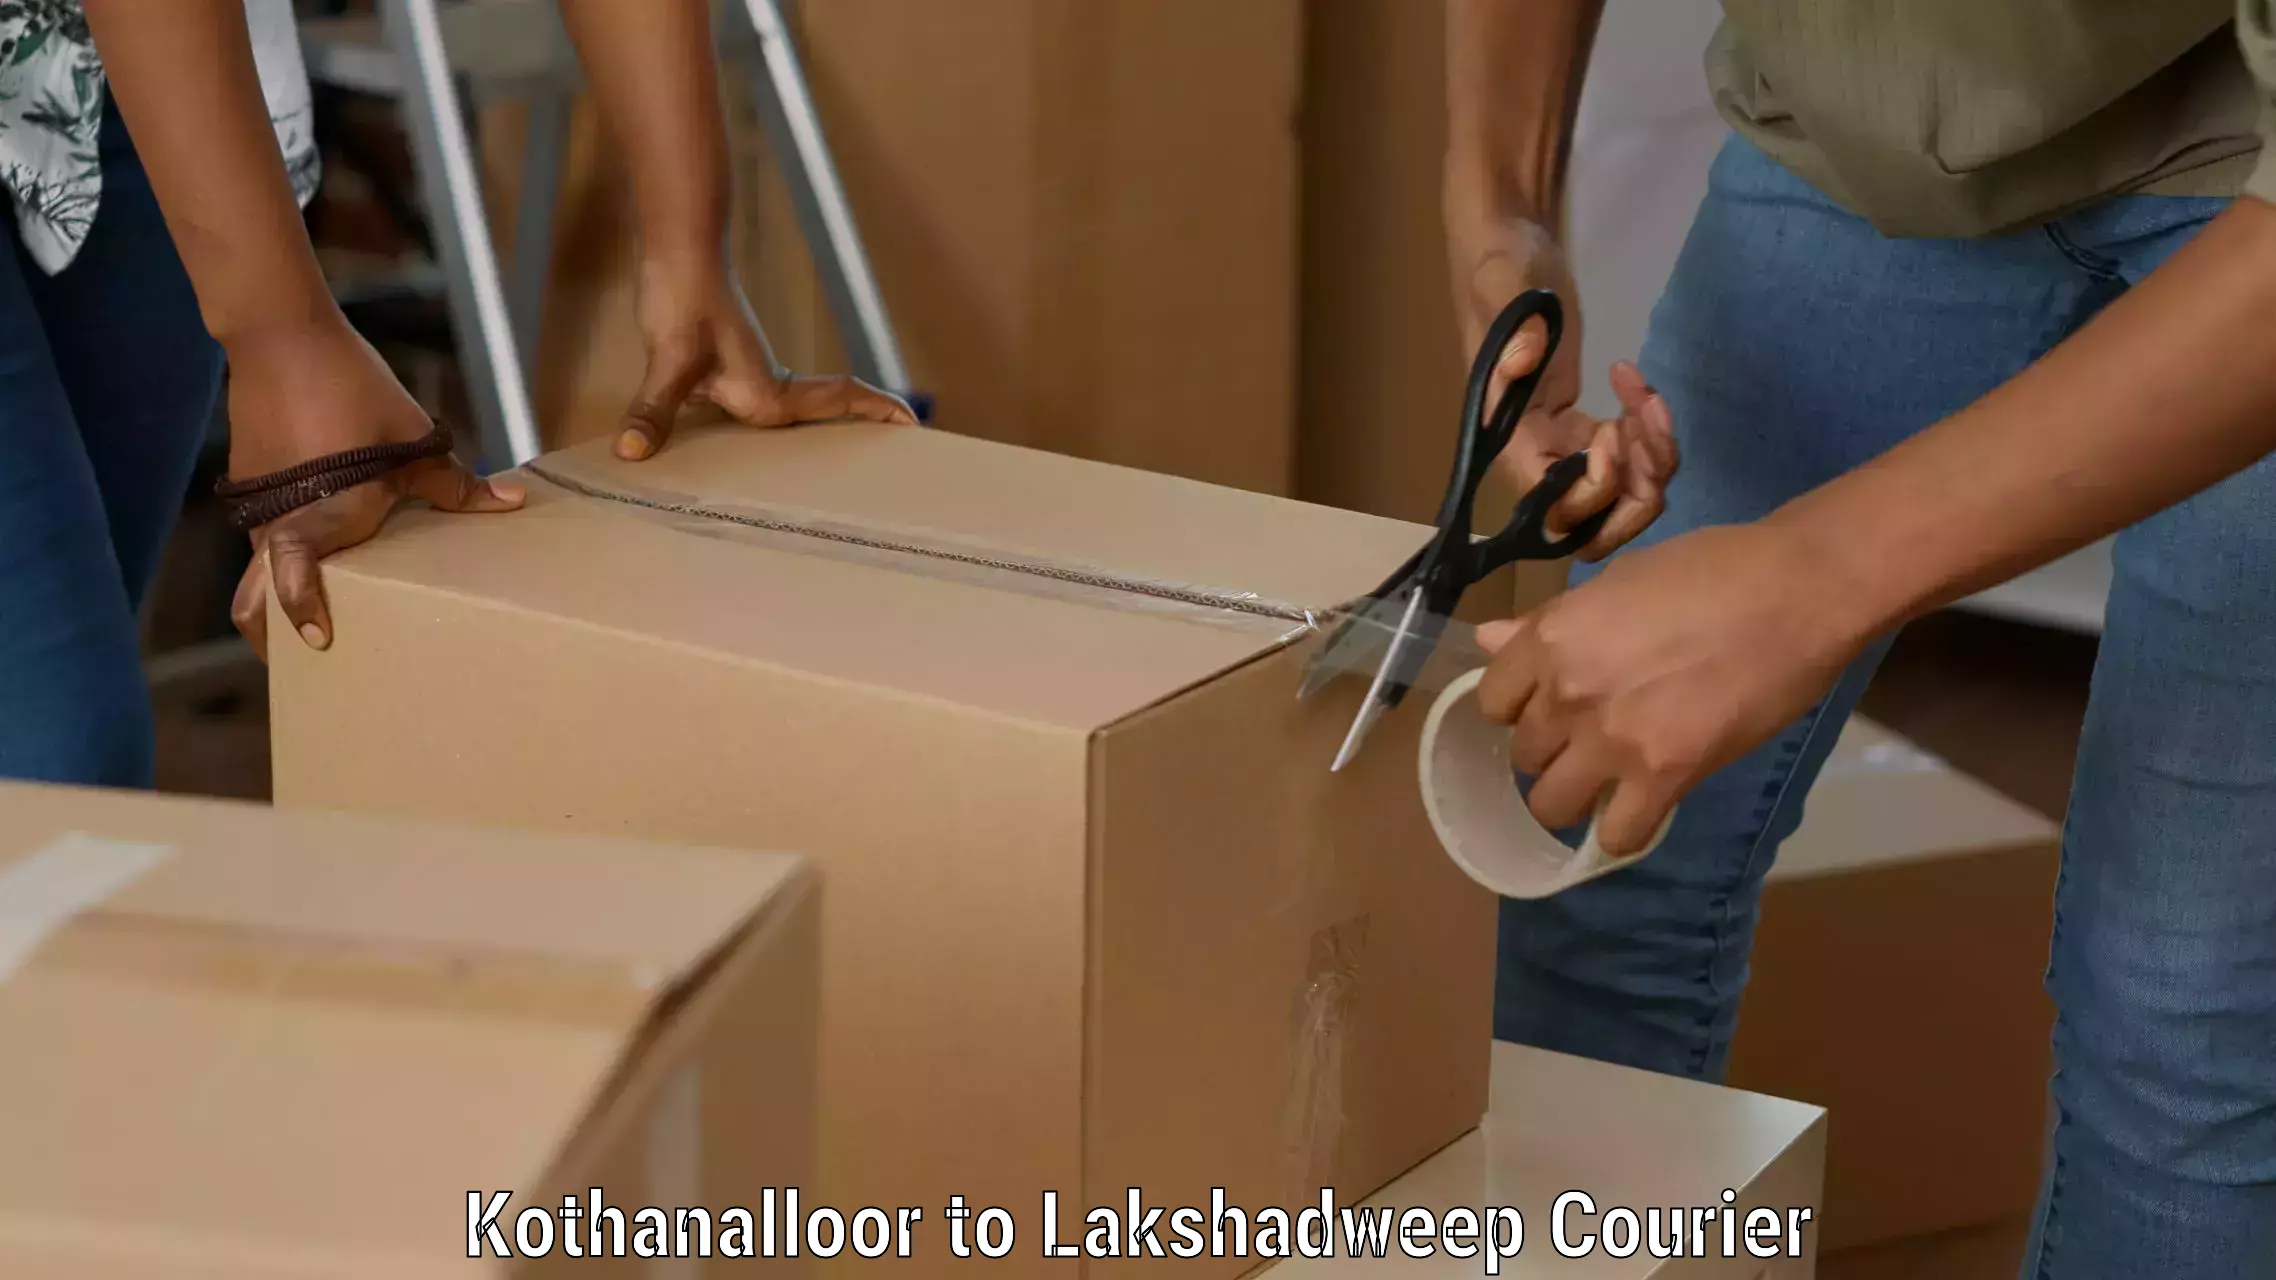 Multi-carrier shipping Kothanalloor to Lakshadweep